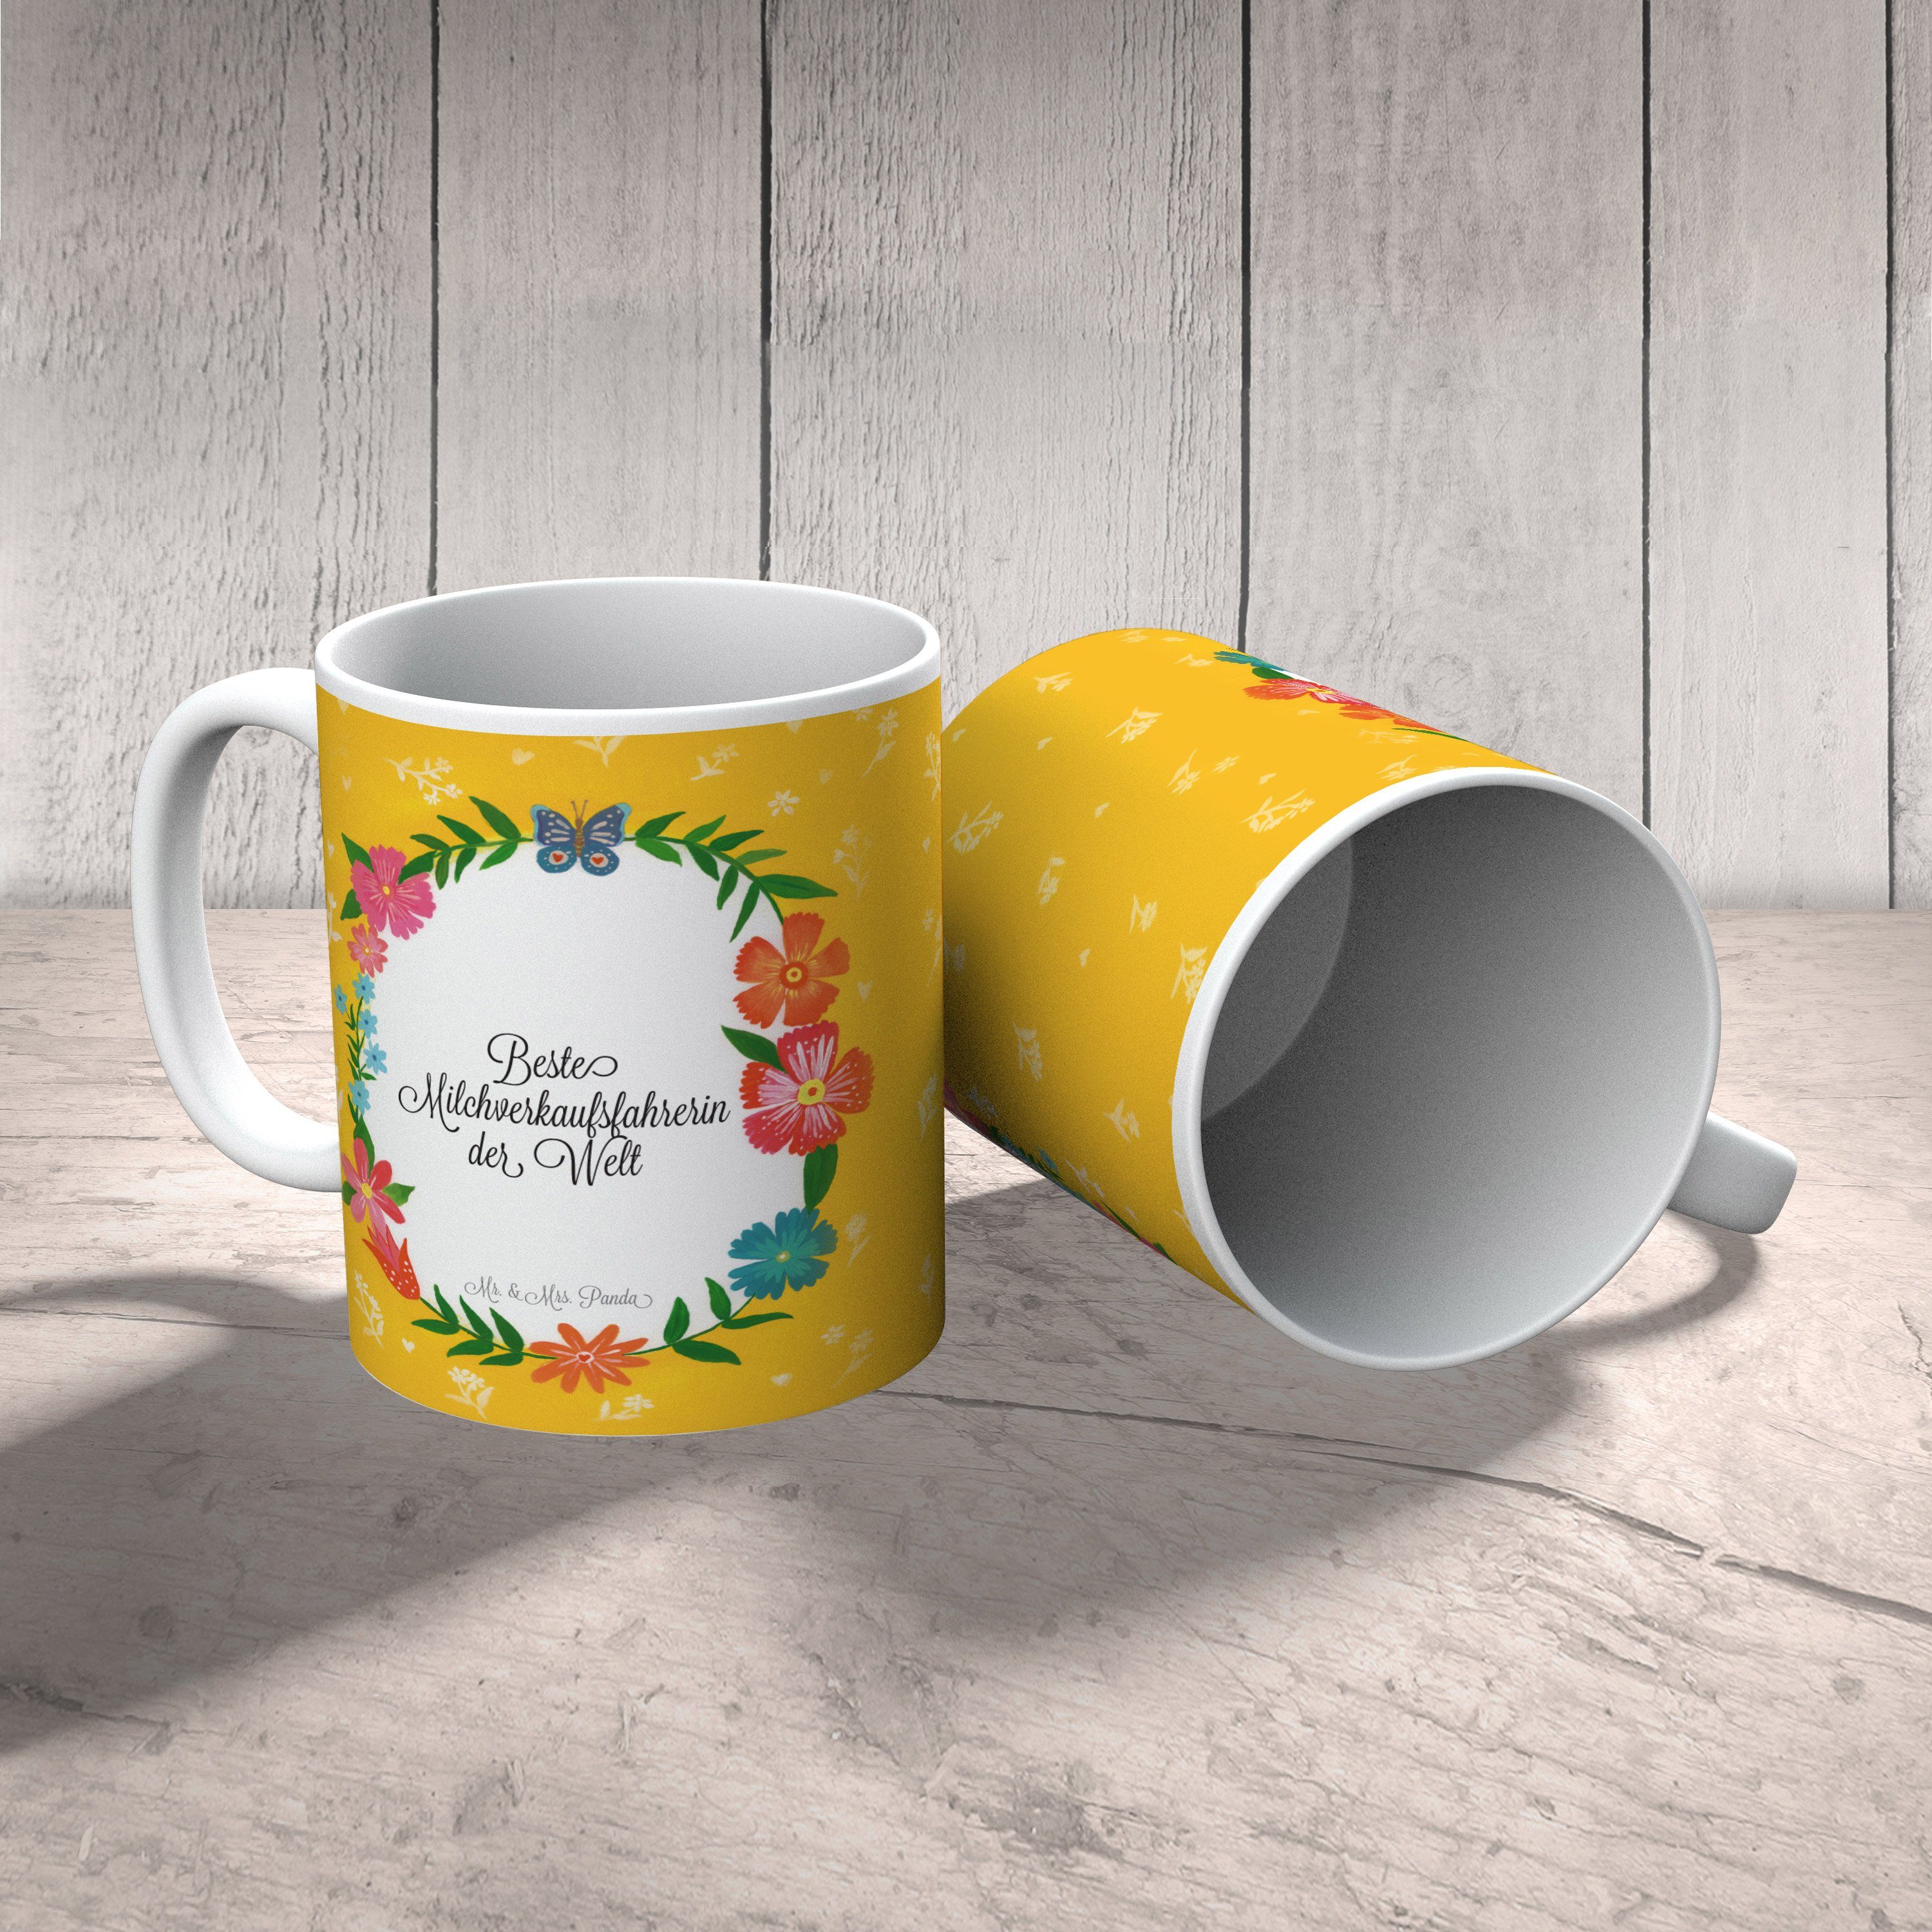 & Geschenk Tasse Keramik Tasse Mr. - Tass, Milchverkaufsfahrerin Rente, Panda Mrs. Sprüche, Geschenk,